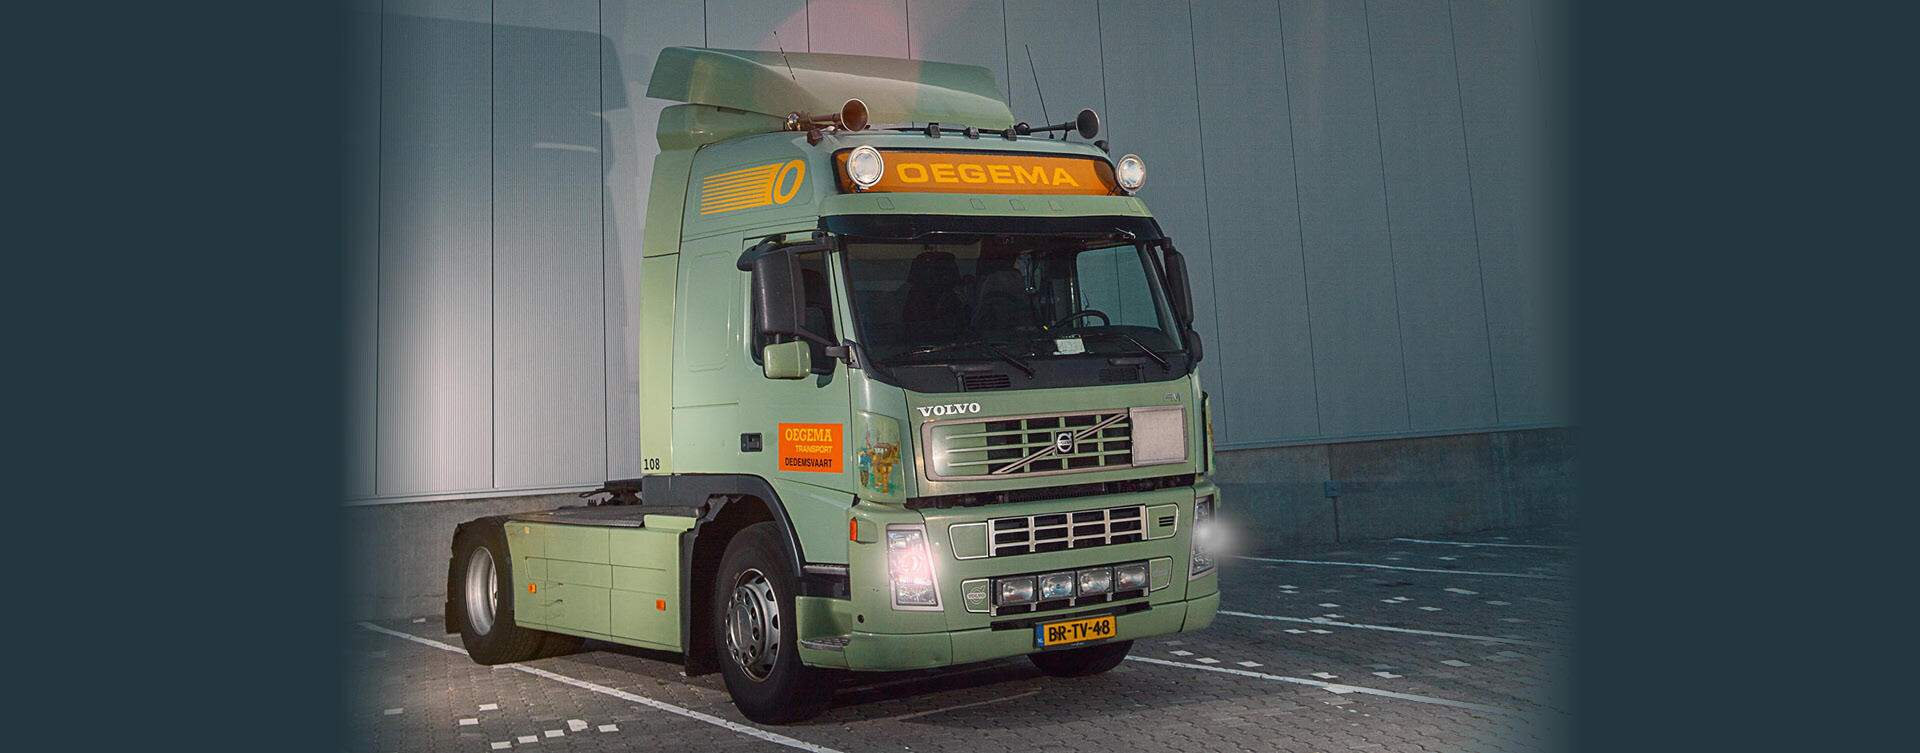 Oegema Transport rijdt twee miljoen kilometer met Volvo FM